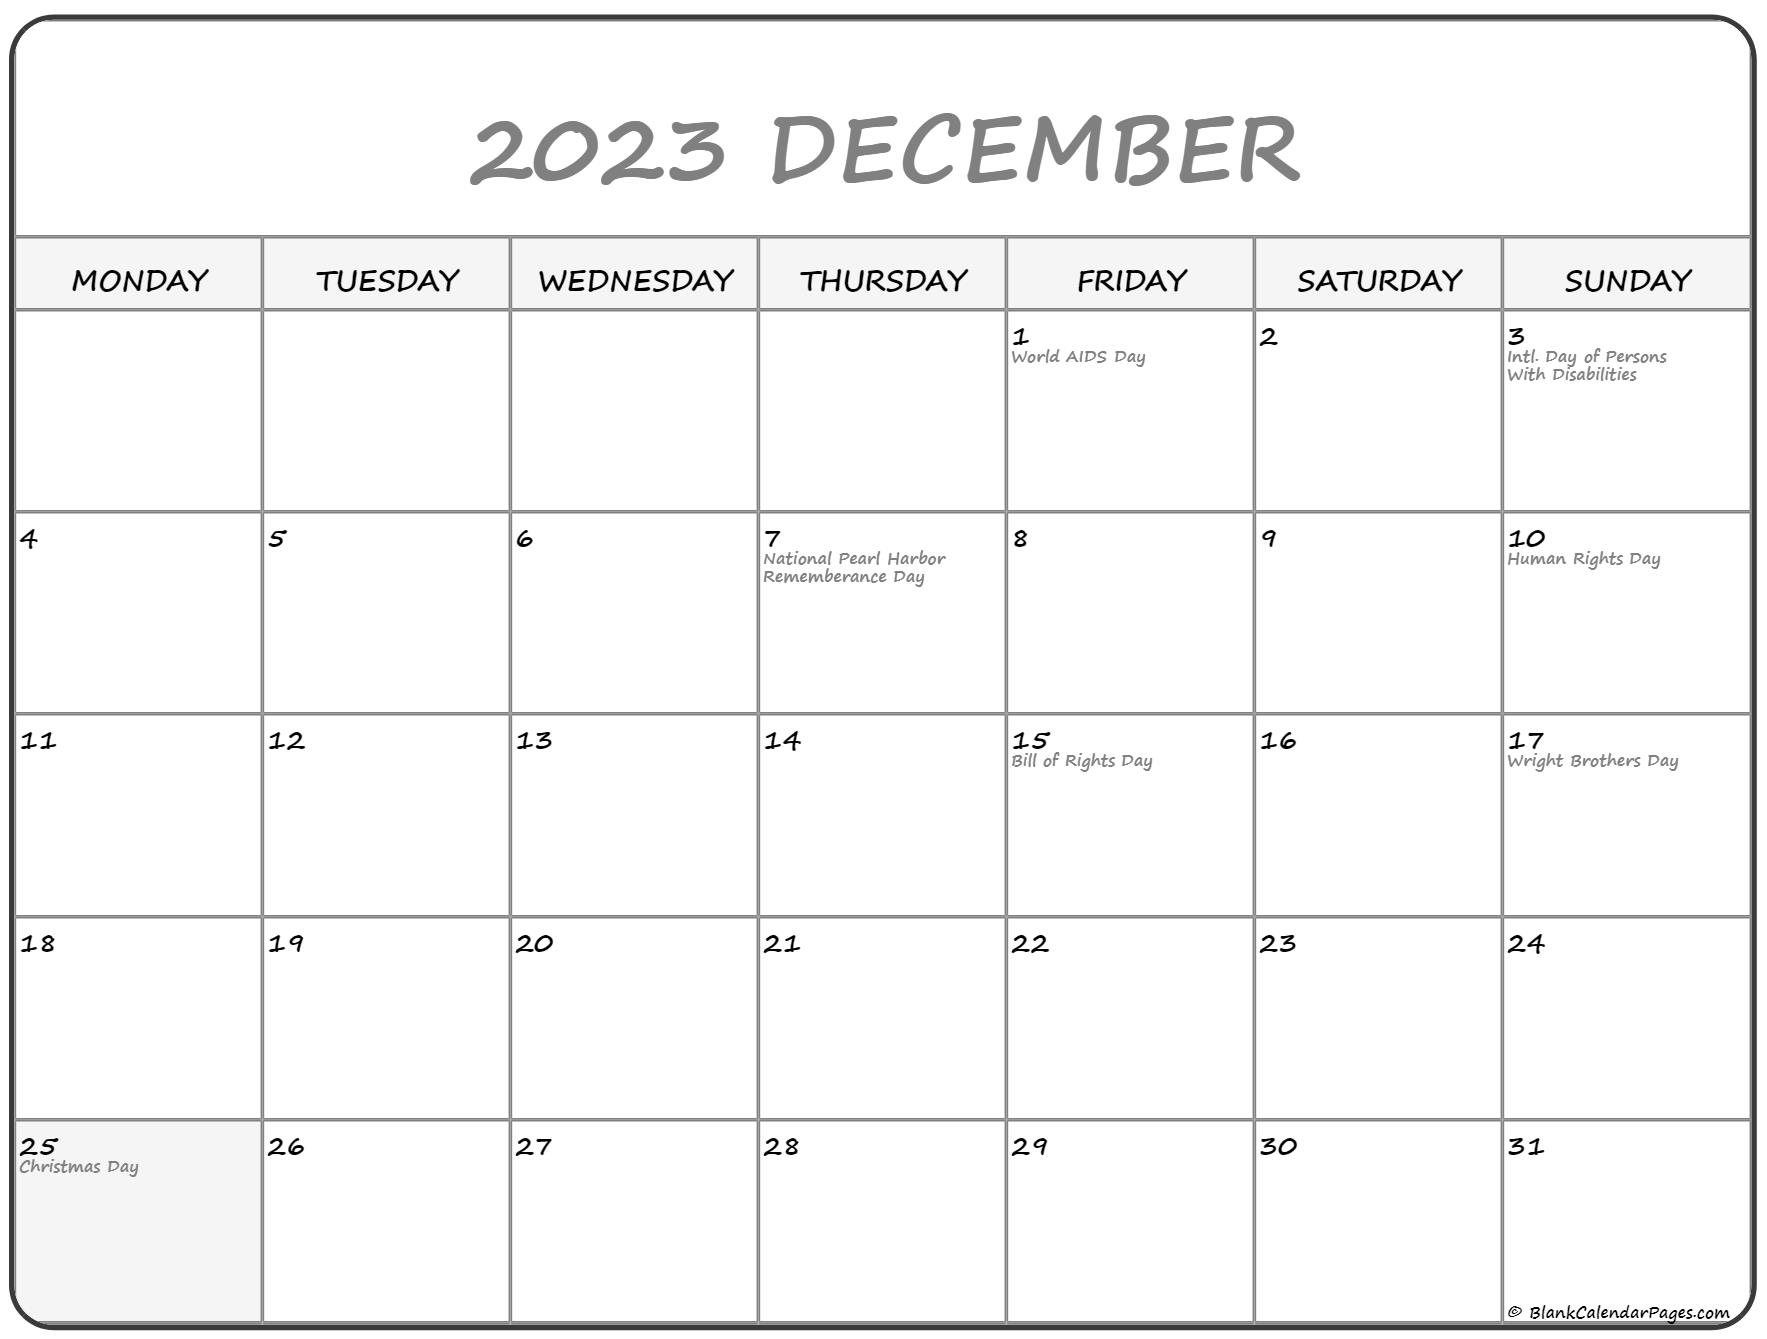 december-2023-calendar-starting-monday-get-latest-map-update